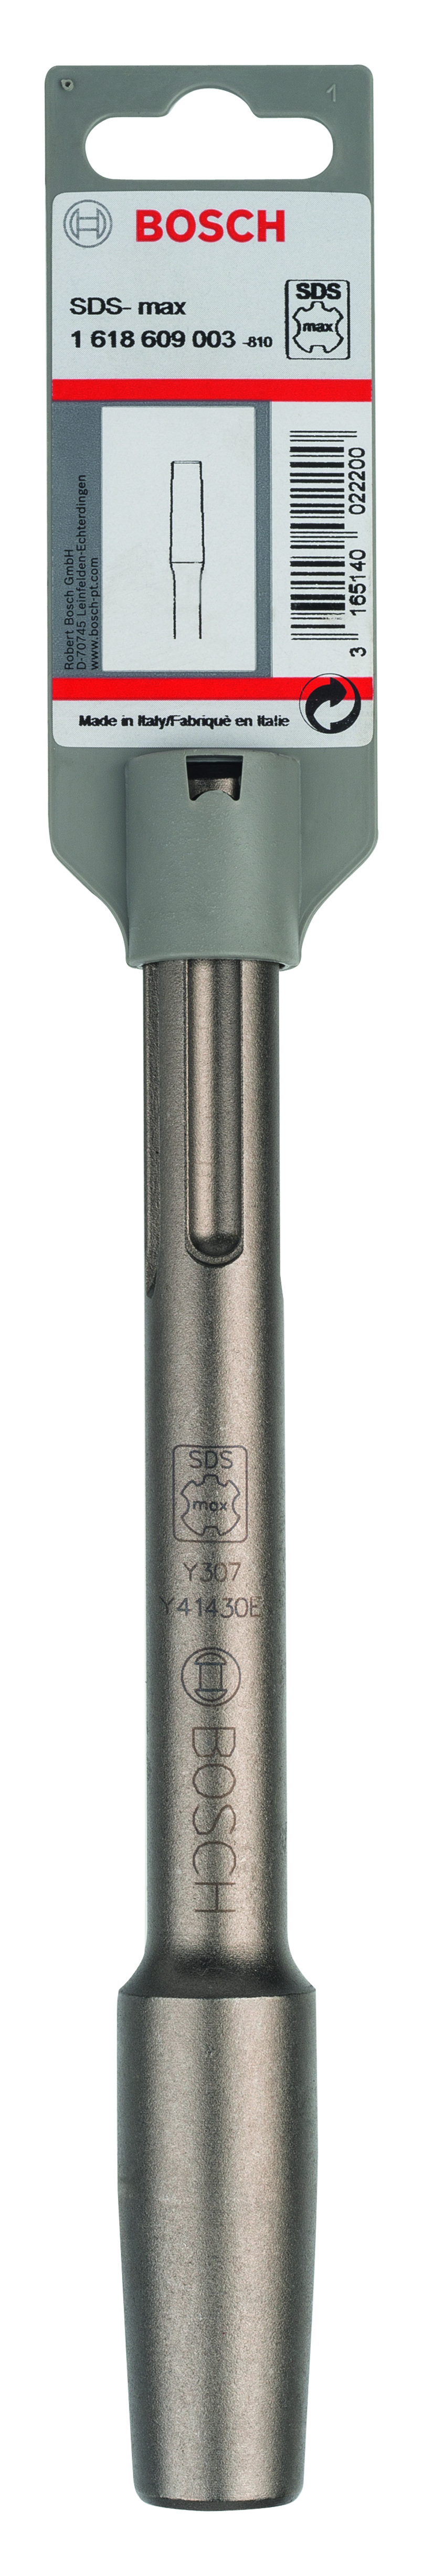 Bosch 220mm SDS-Max Tamping Plate & Bush Hammer Head Toolholder